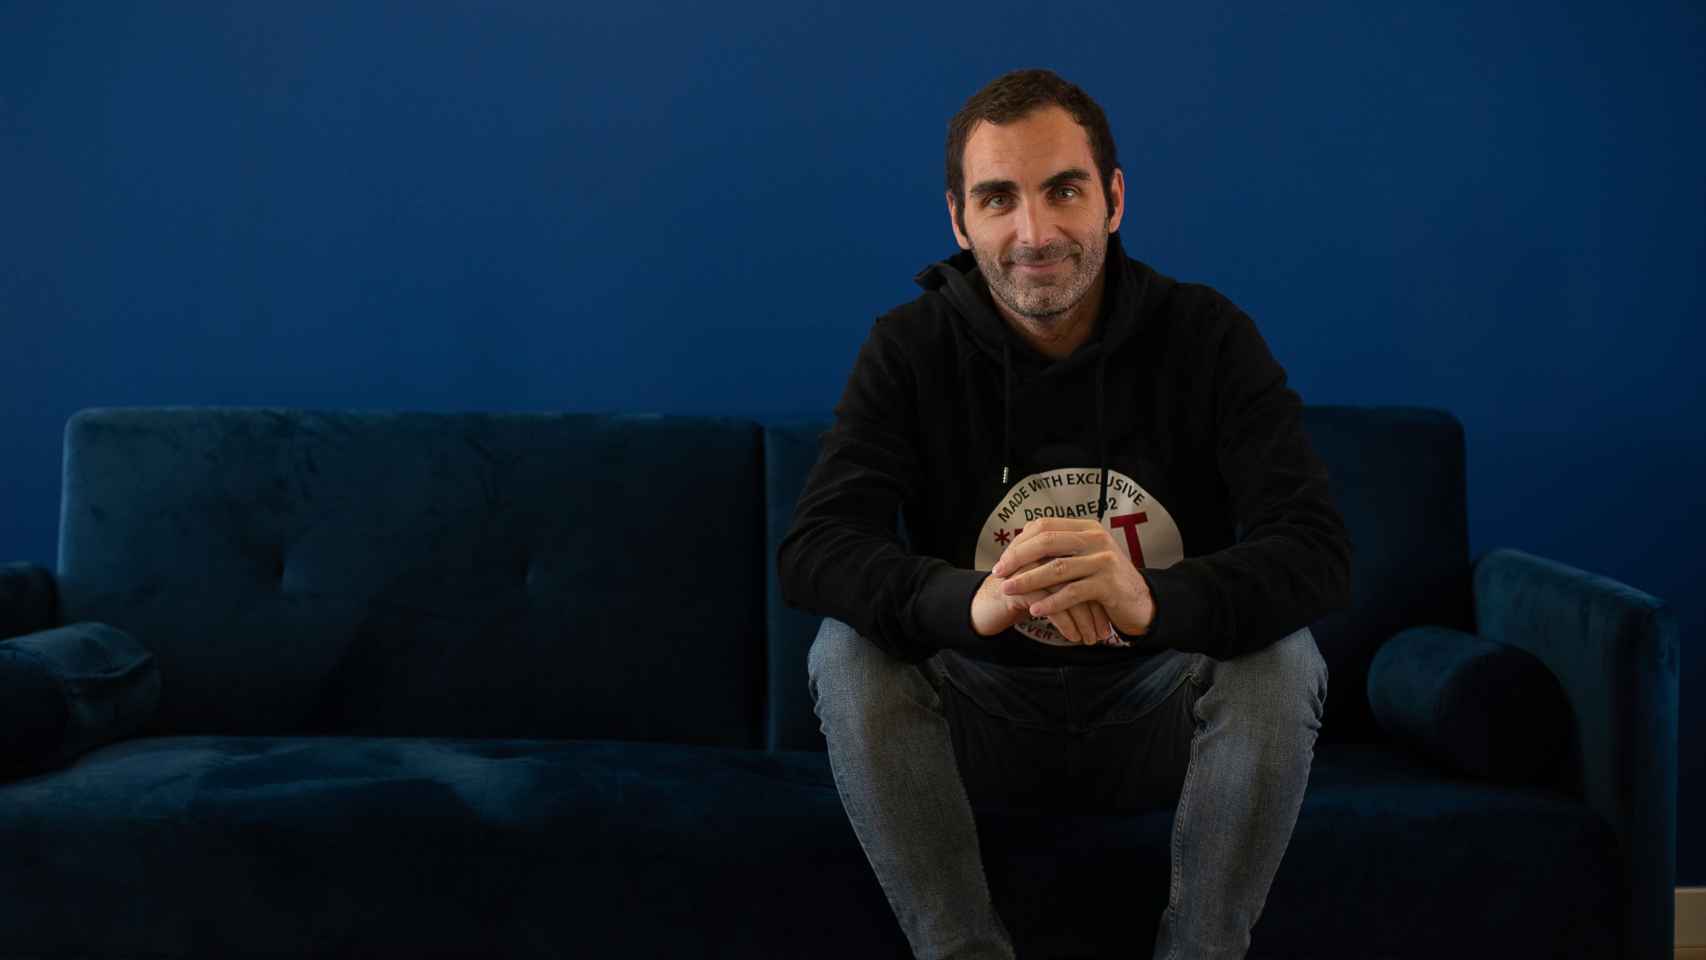 Christian Rodríguez, cofundador y CEO de Mutter Ventures.